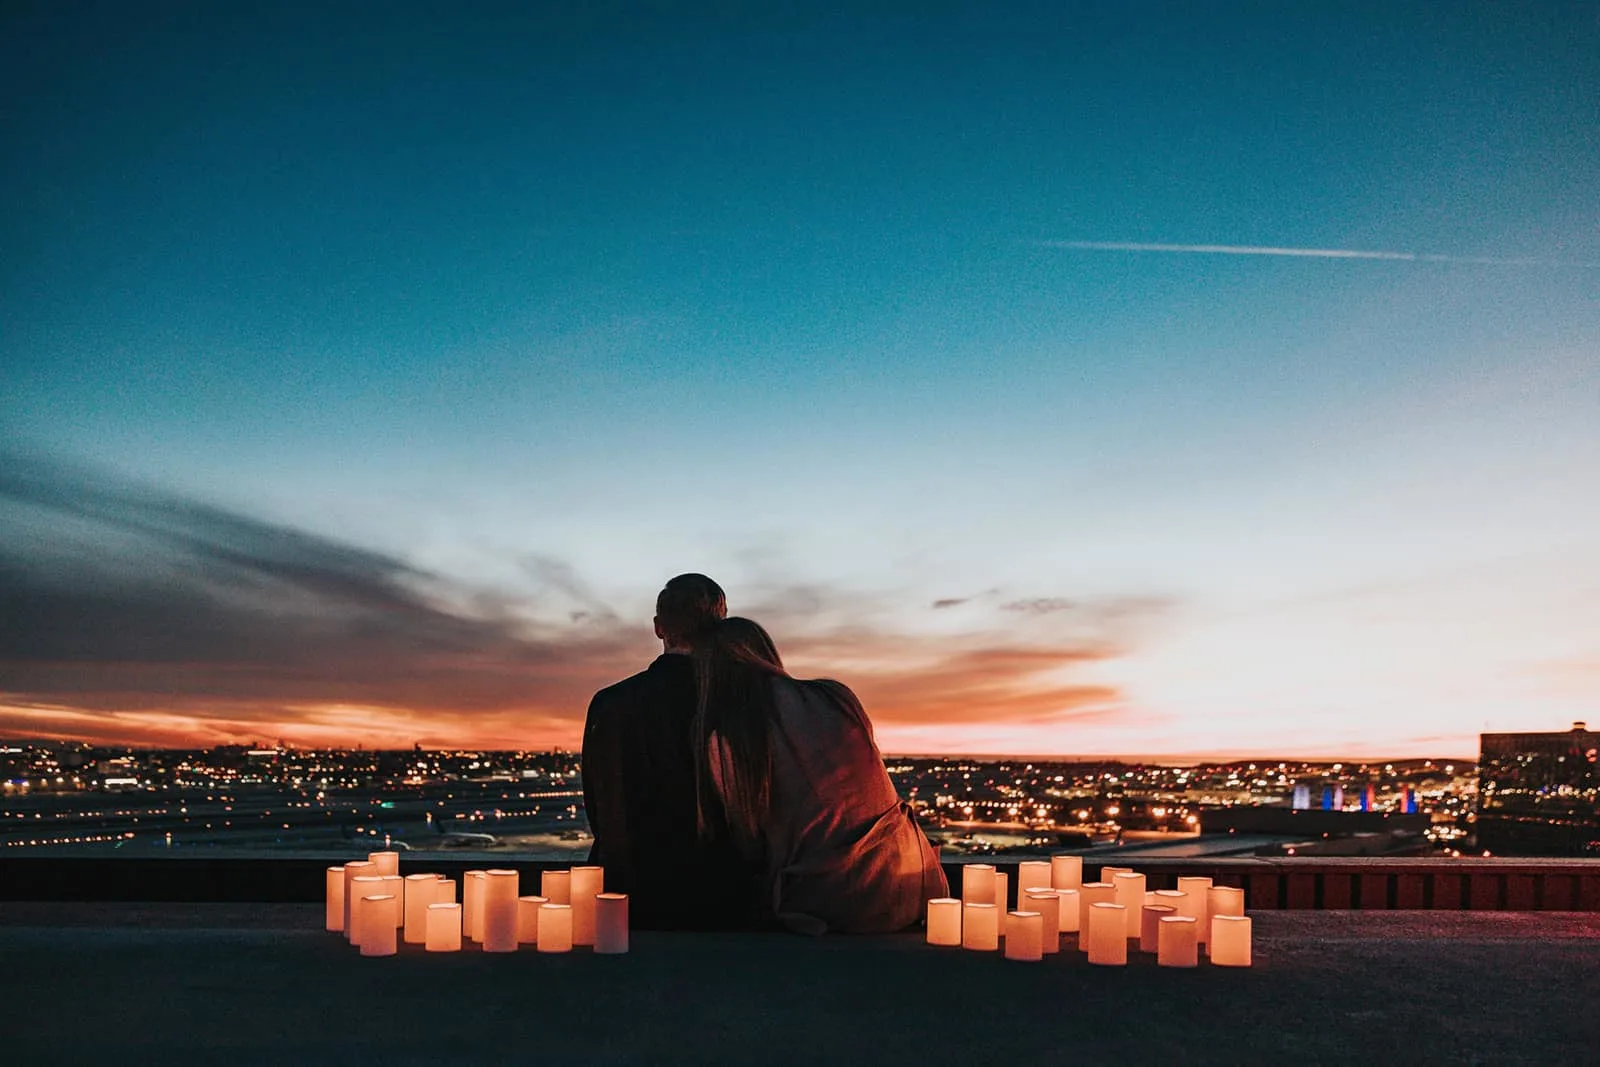 ein Paar sitzt auf dem Beton, umgeben von Kerzen